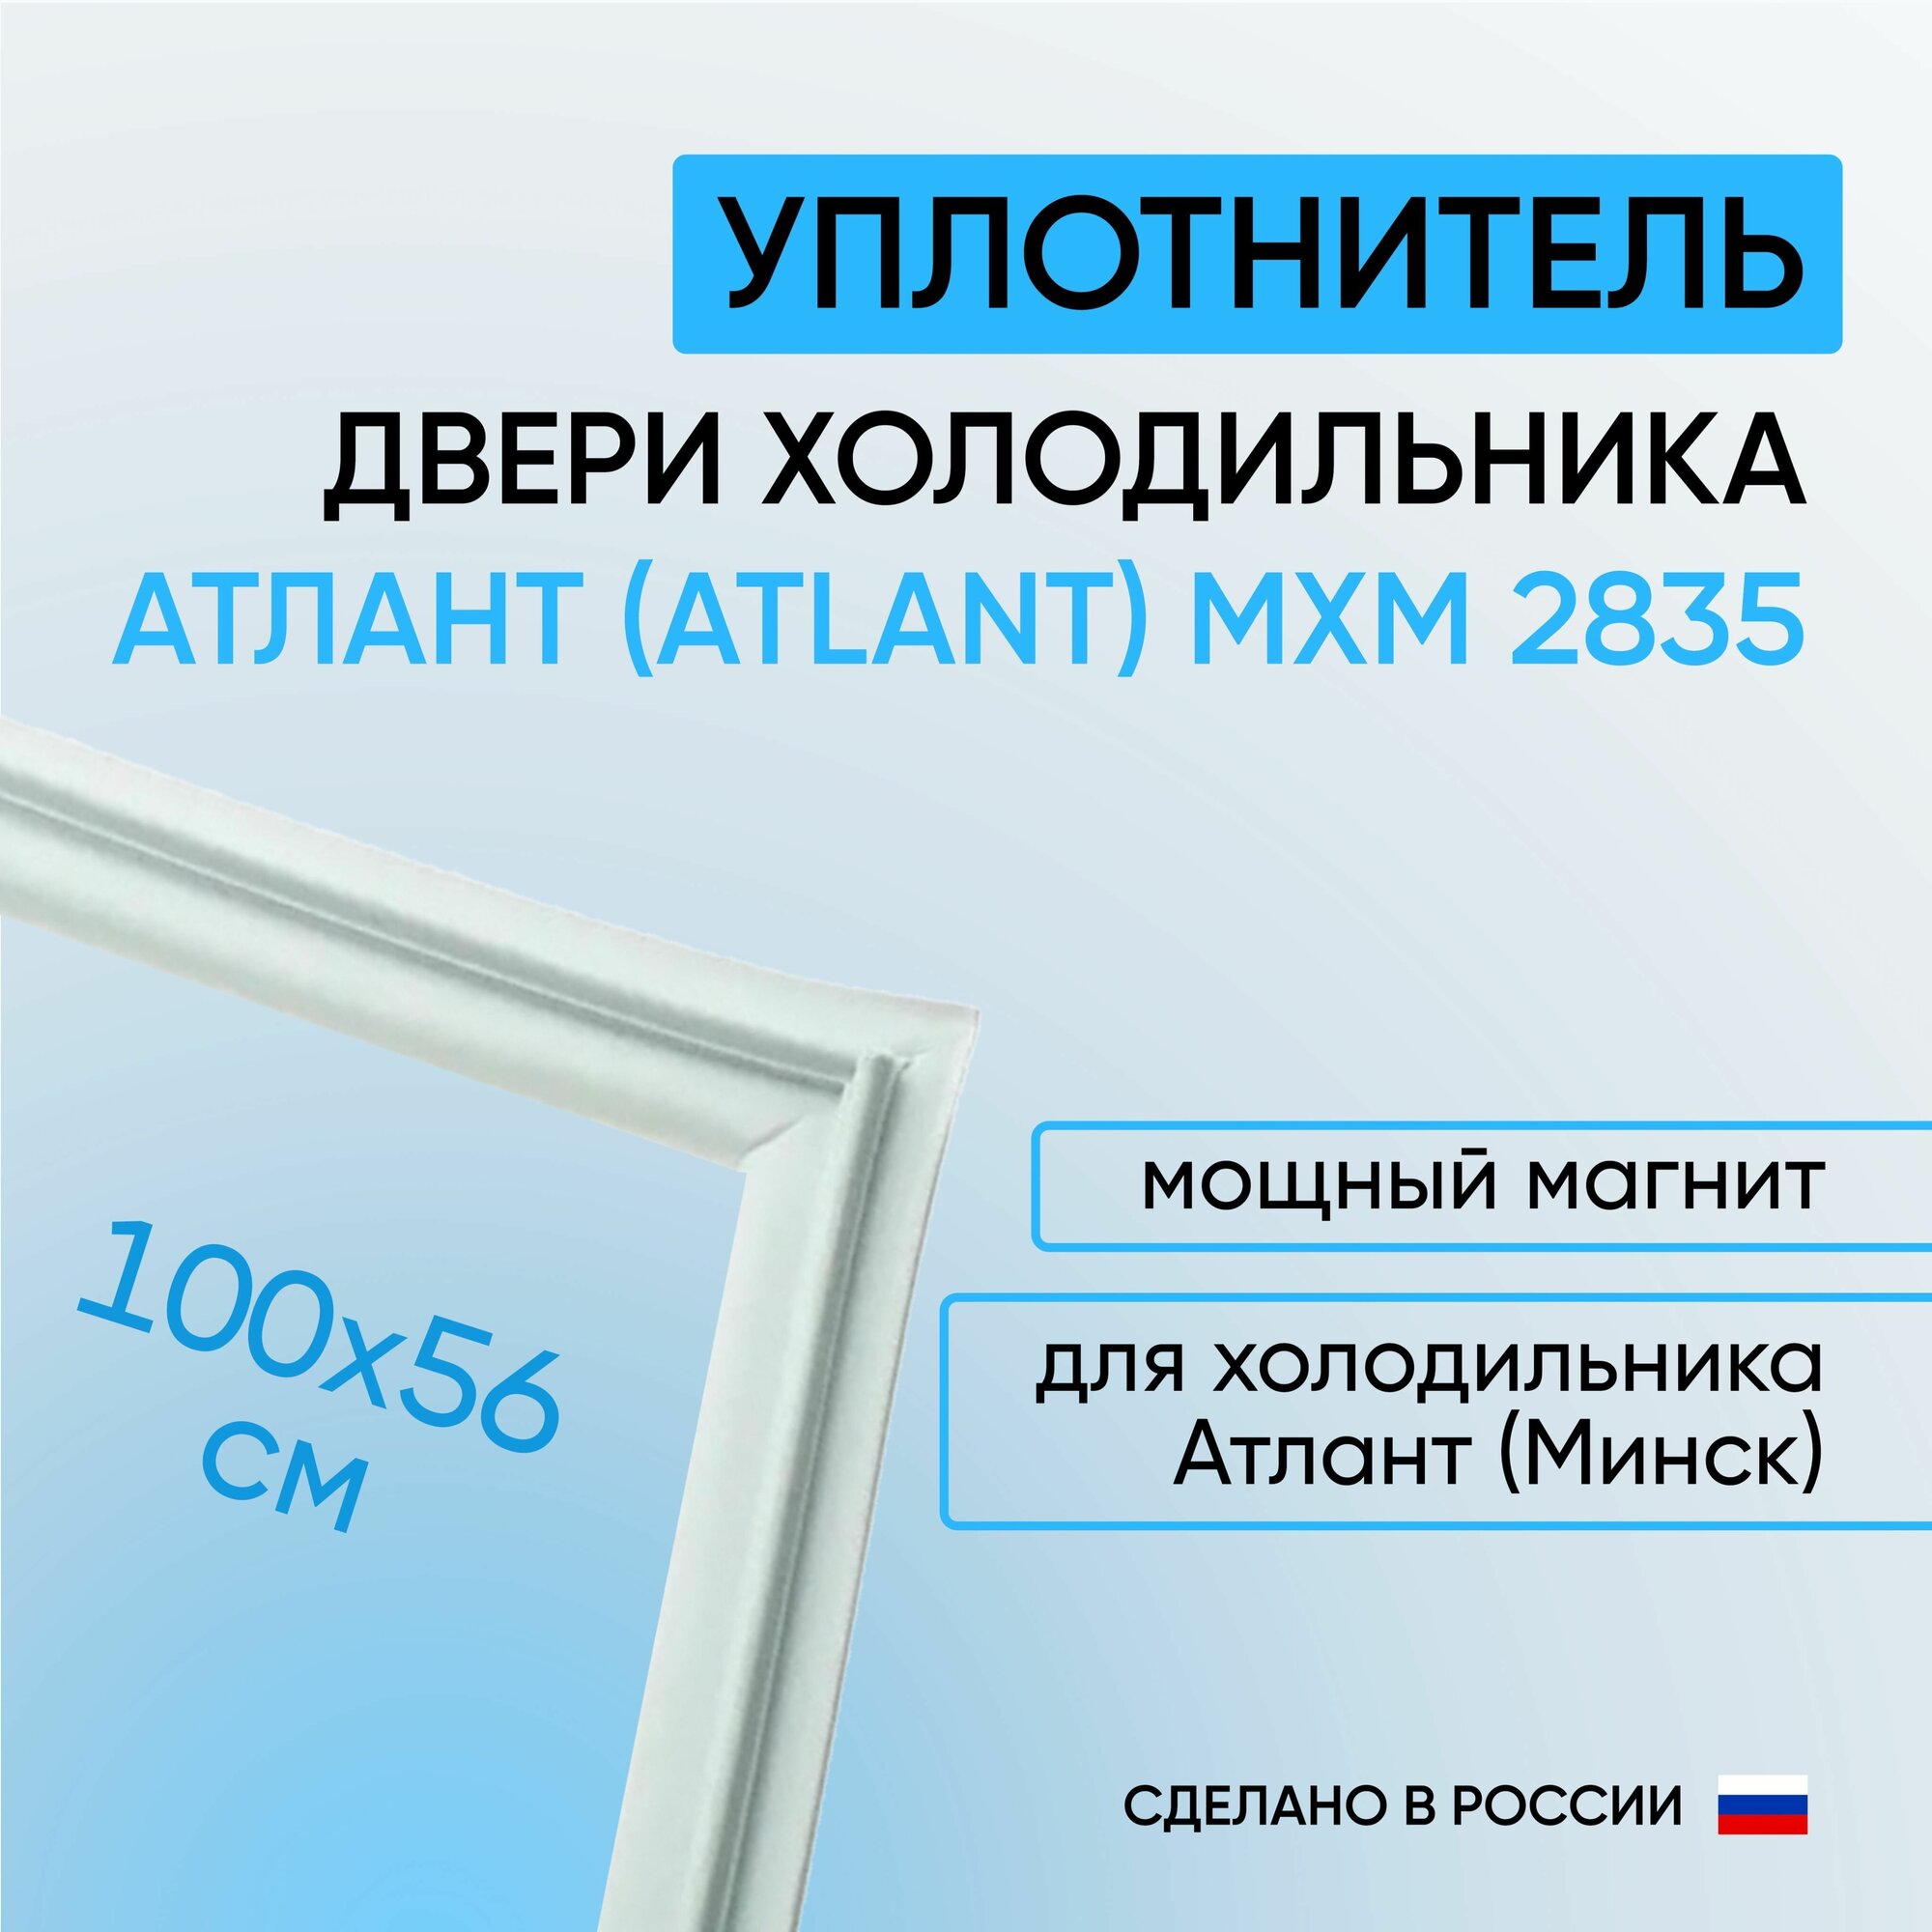 Уплотнитель двери холодильника Атлант (Atlant) МХМ 2835 белый (100 x 56 см)